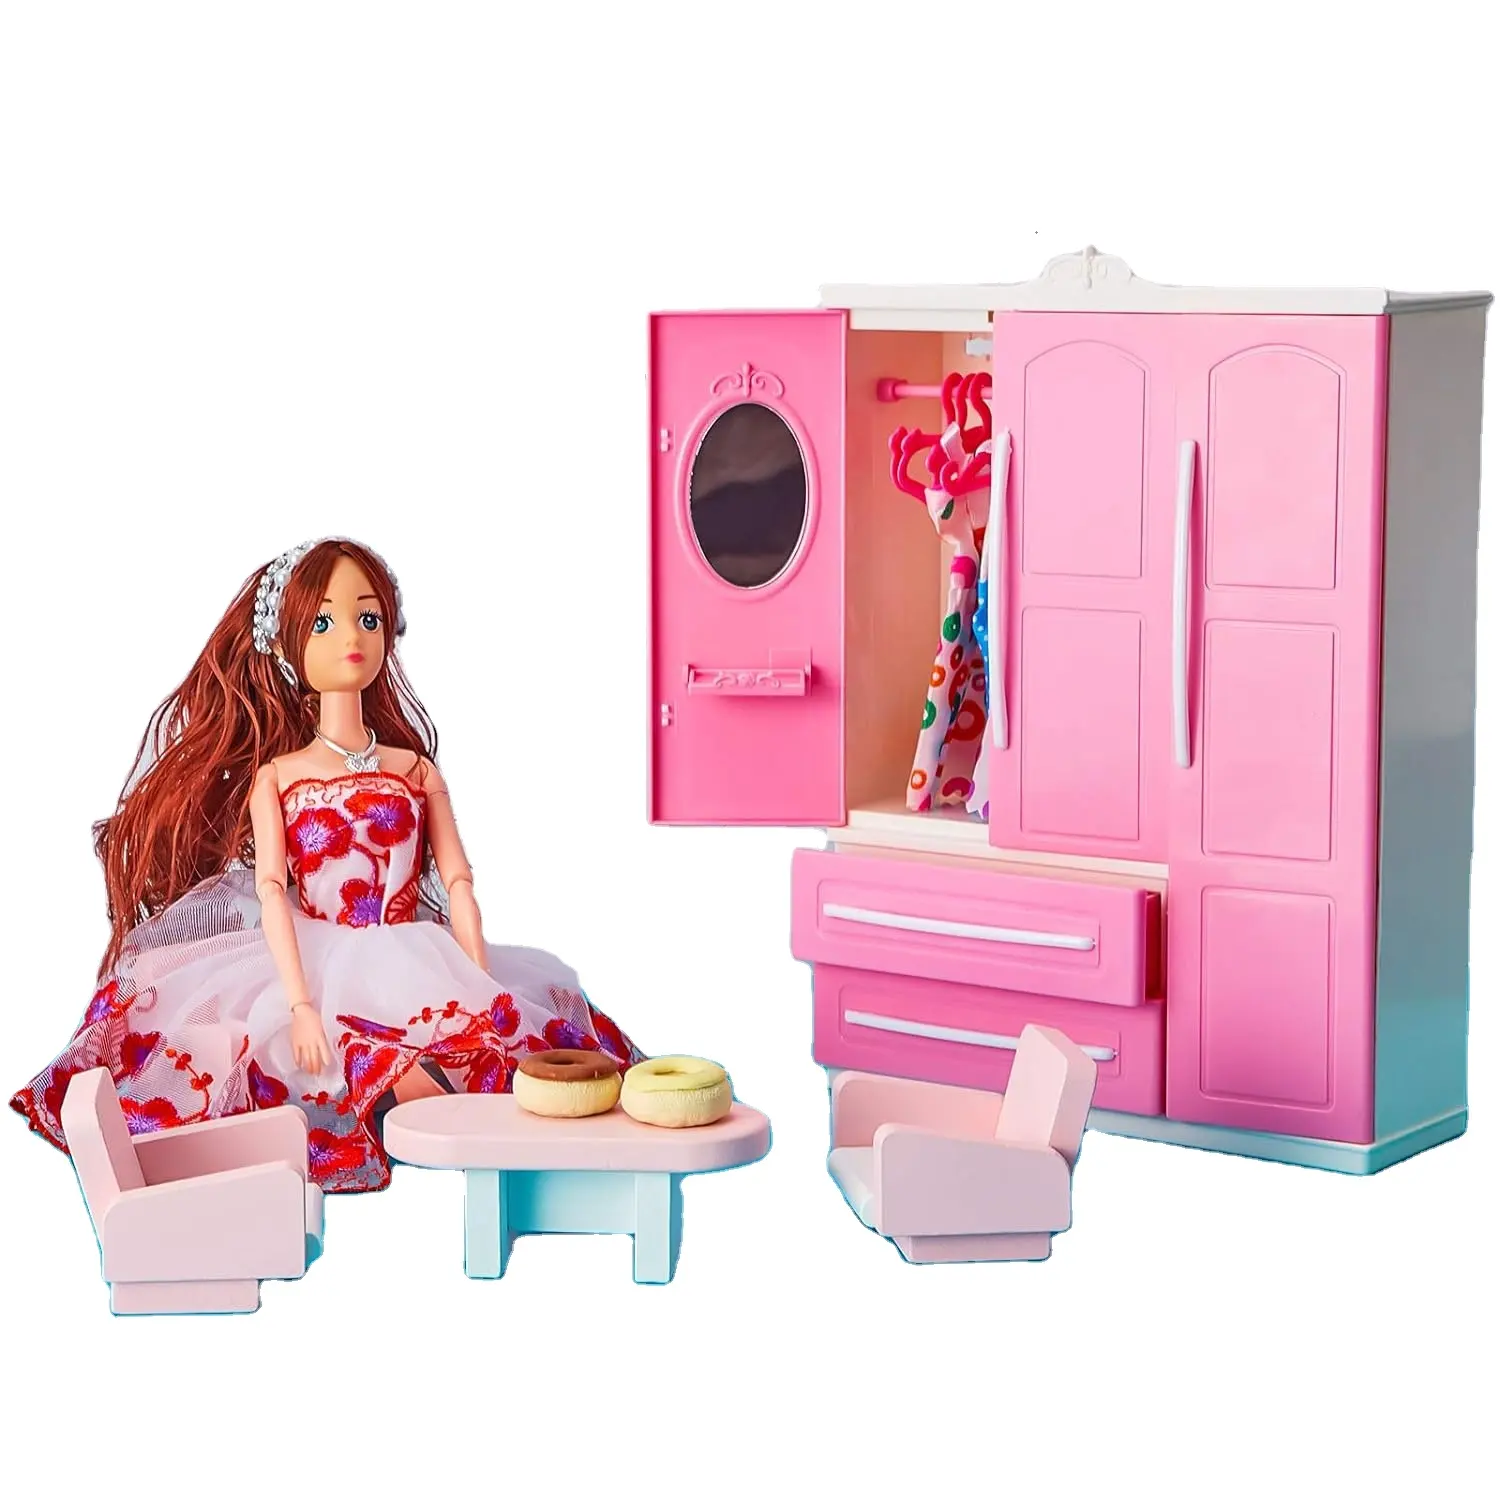 Venda quente mais recente produtos promocionais de bonecas Barbie, acessórios de casa de bonecas populares fofos e adoráveis para crianças e meninas, acessórios de mobília de brinquedo